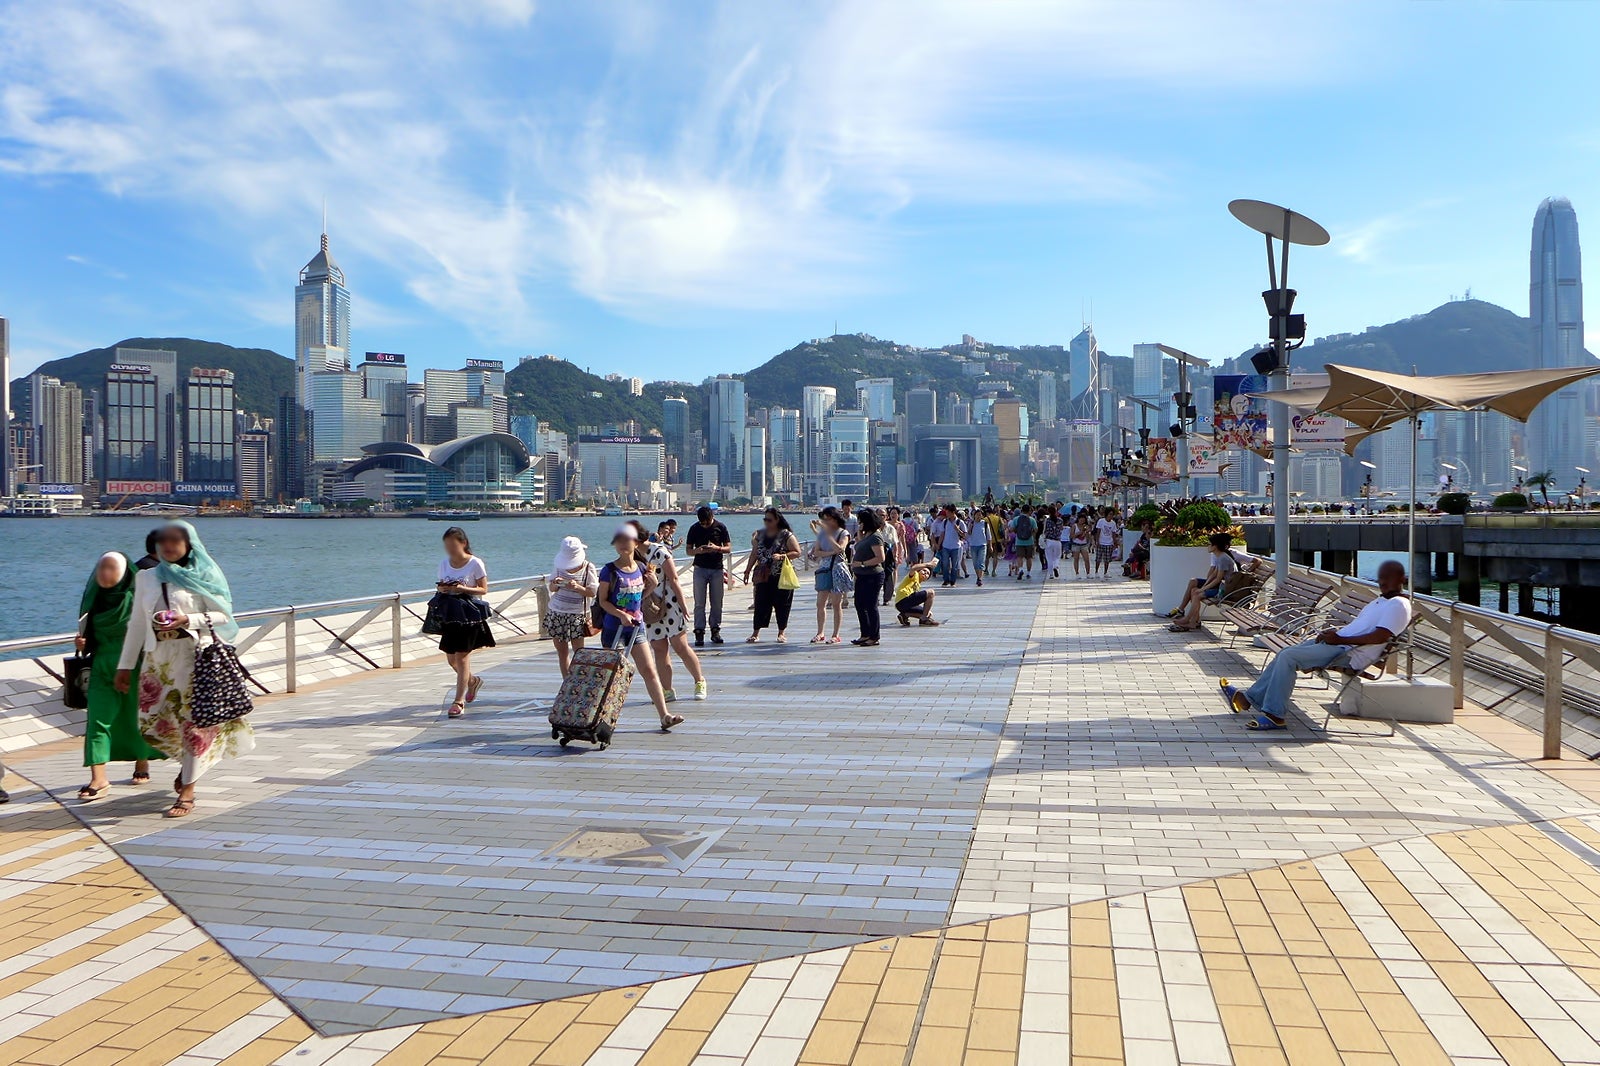 Hongkong Dengan Ikonik Gedung Pencakar Langit Terbanyak di Dunia, Sudah Pasti Dong di List Sobat Bukan? Ini Rekomendasi Tempat Wisata yang Wajib Sobat Kunjungi!